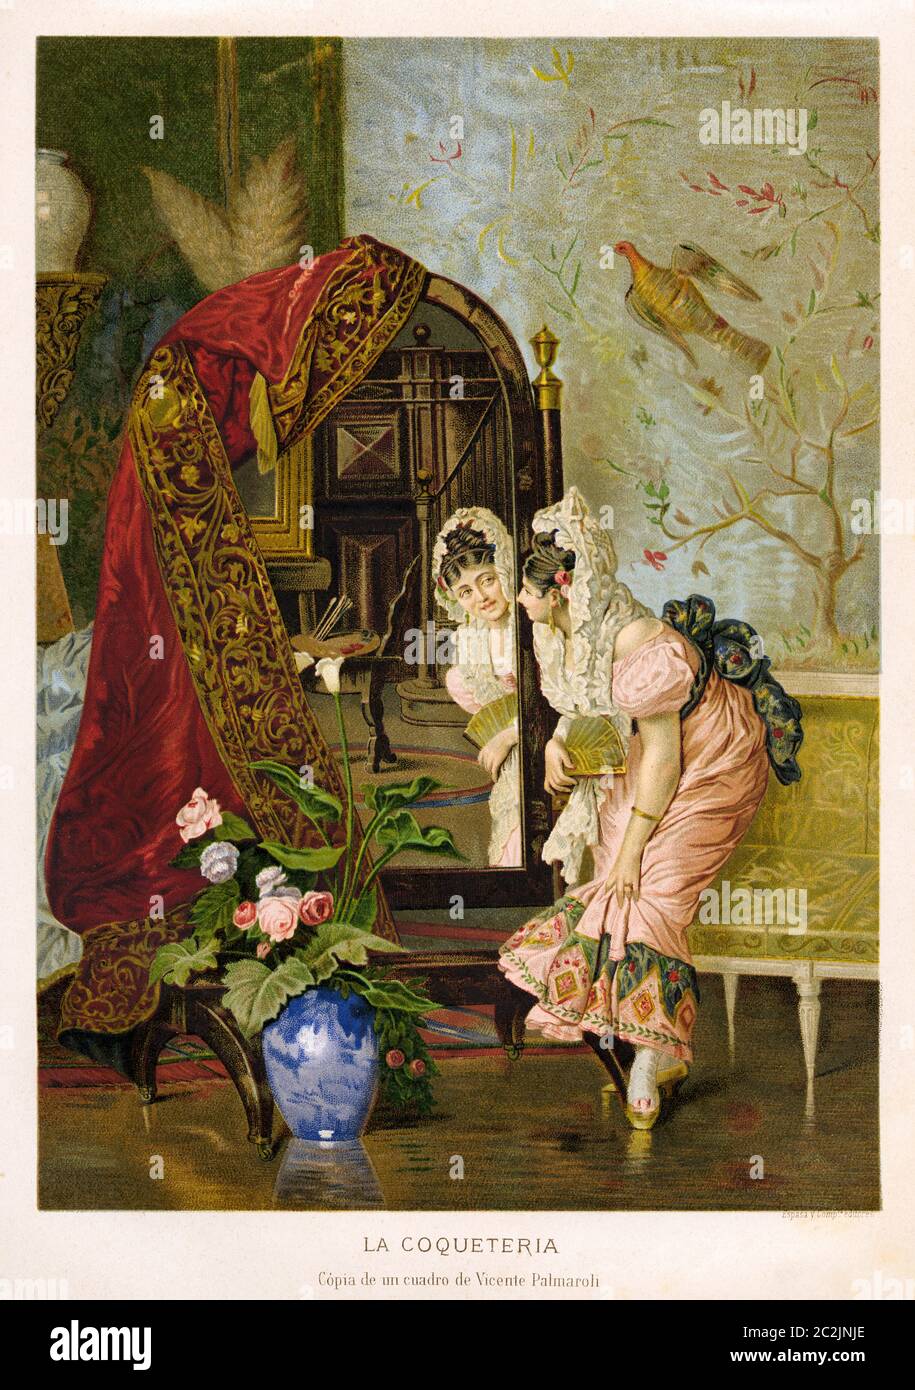 Peinture d'une femme du XIXe siècle à la recherche d'un miroir par Vicente Palmaroli (1834-1896) peintre espagnol de la période romantique qui a évolué en peinture costumbrista. Illustration gravée du XIXe siècle, El Mundo Ilustrado 1880 Banque D'Images